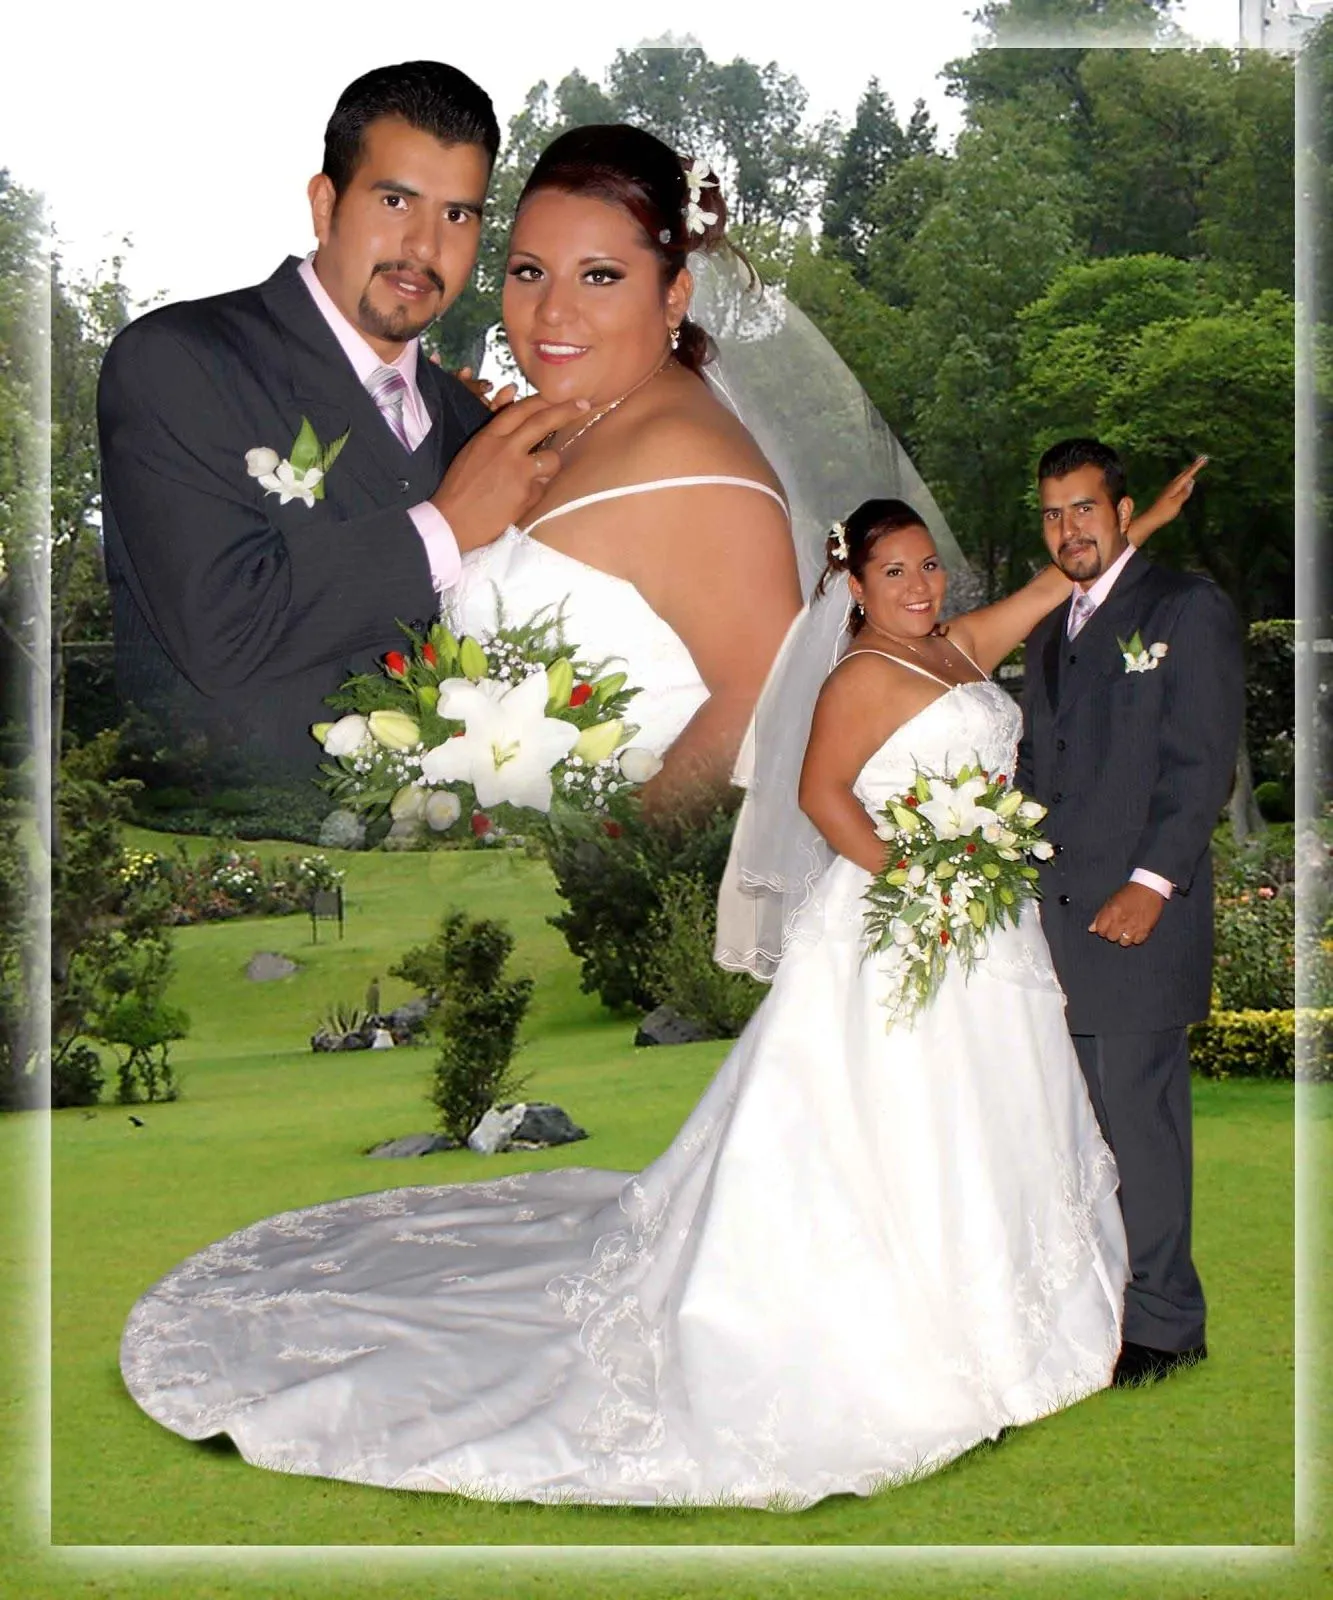 Fondos para bodas Photoshop - Imagui